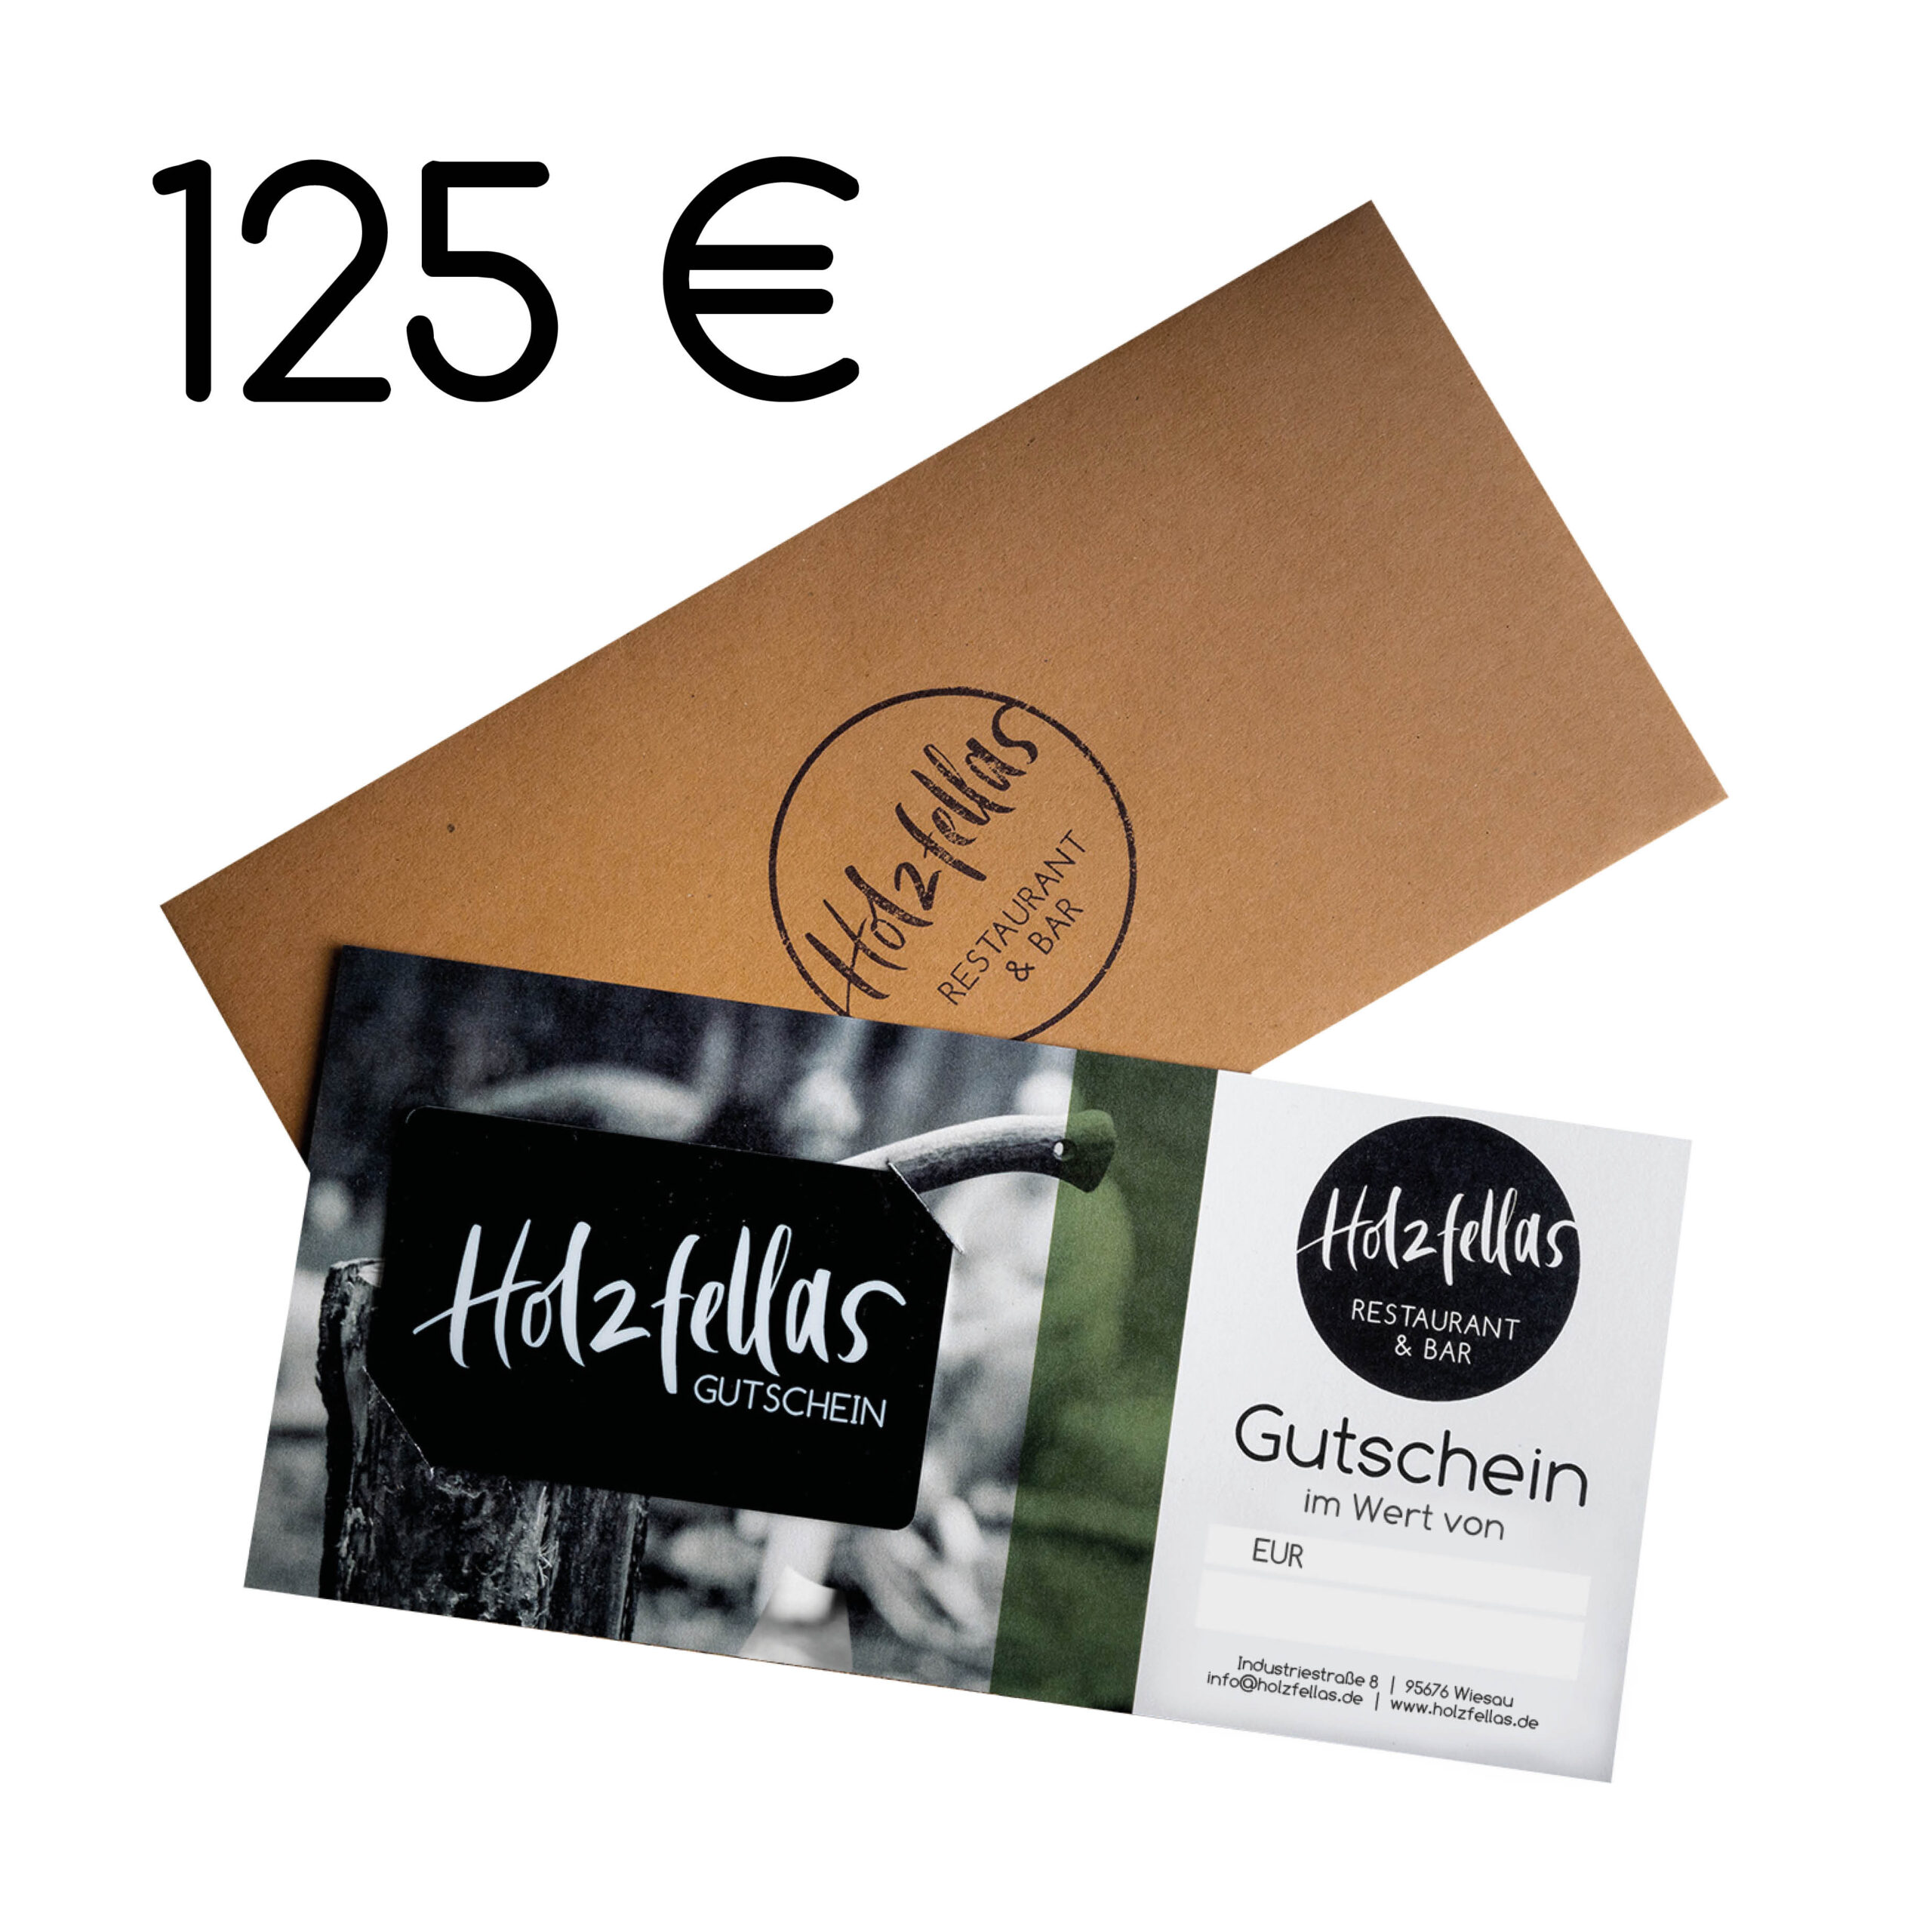 Holzfellas Restaurant Geschenk Gutschein jetzt online bestellen